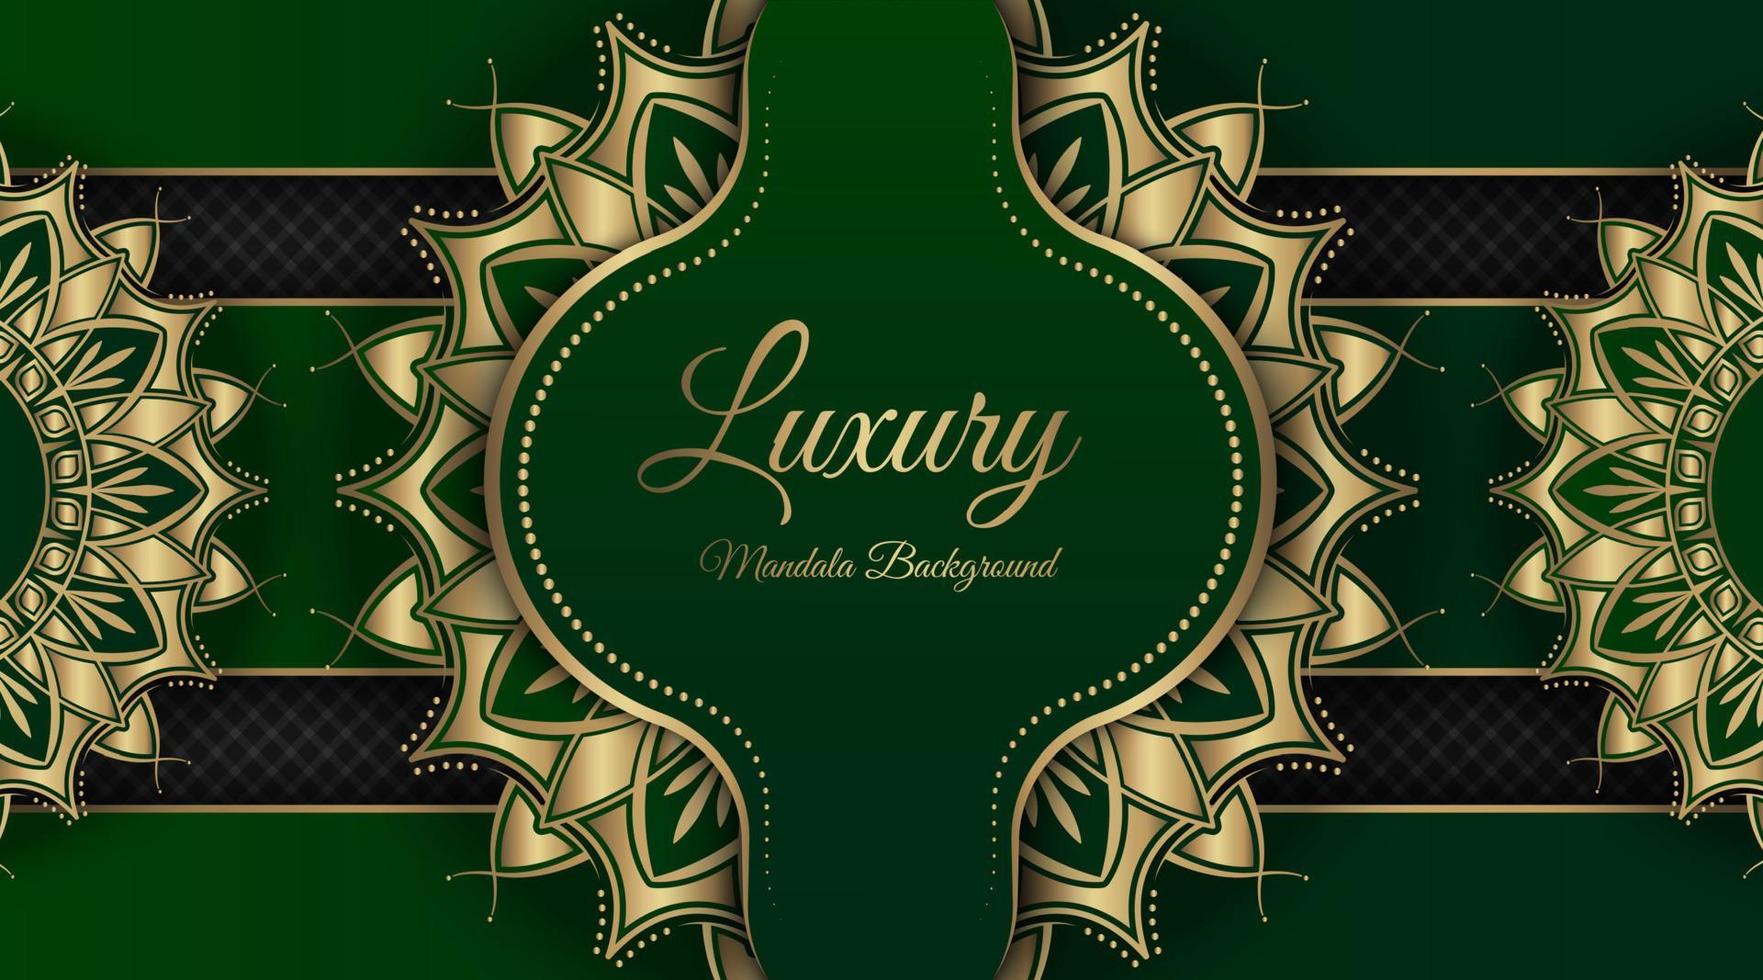 fond de mandala de luxe, vert et or, vecteur de conception